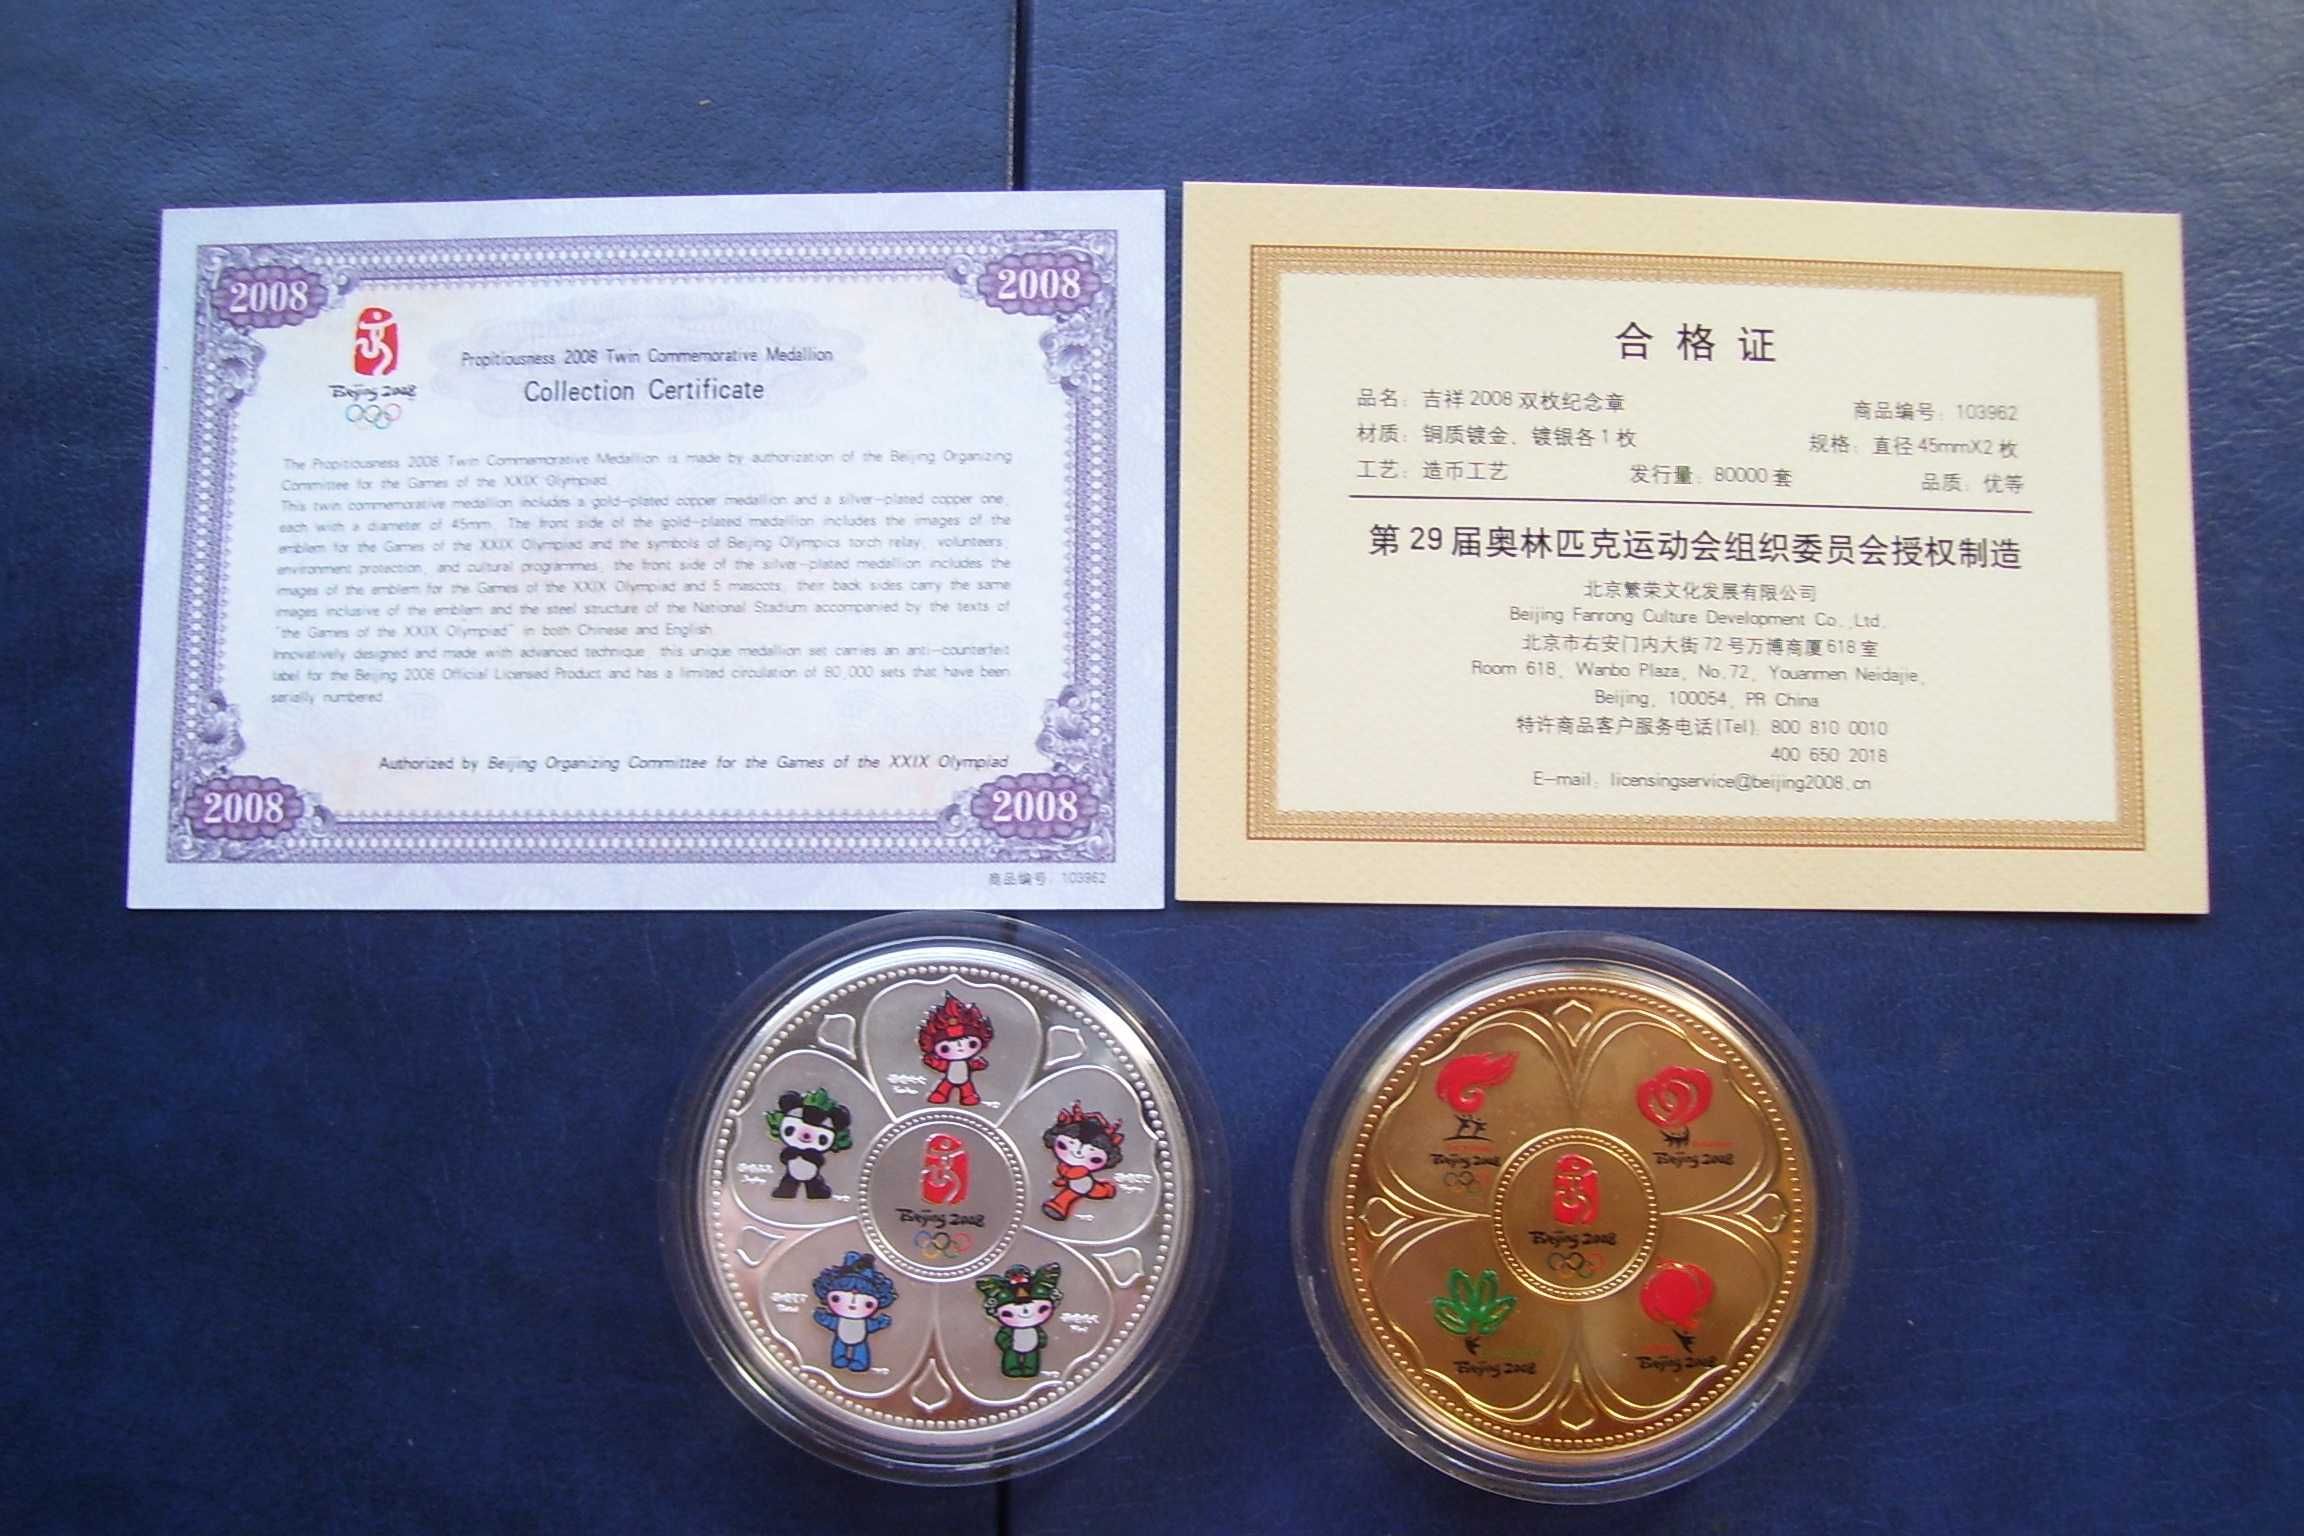 Stare monety Medale Pekin 2008 stan menniczy